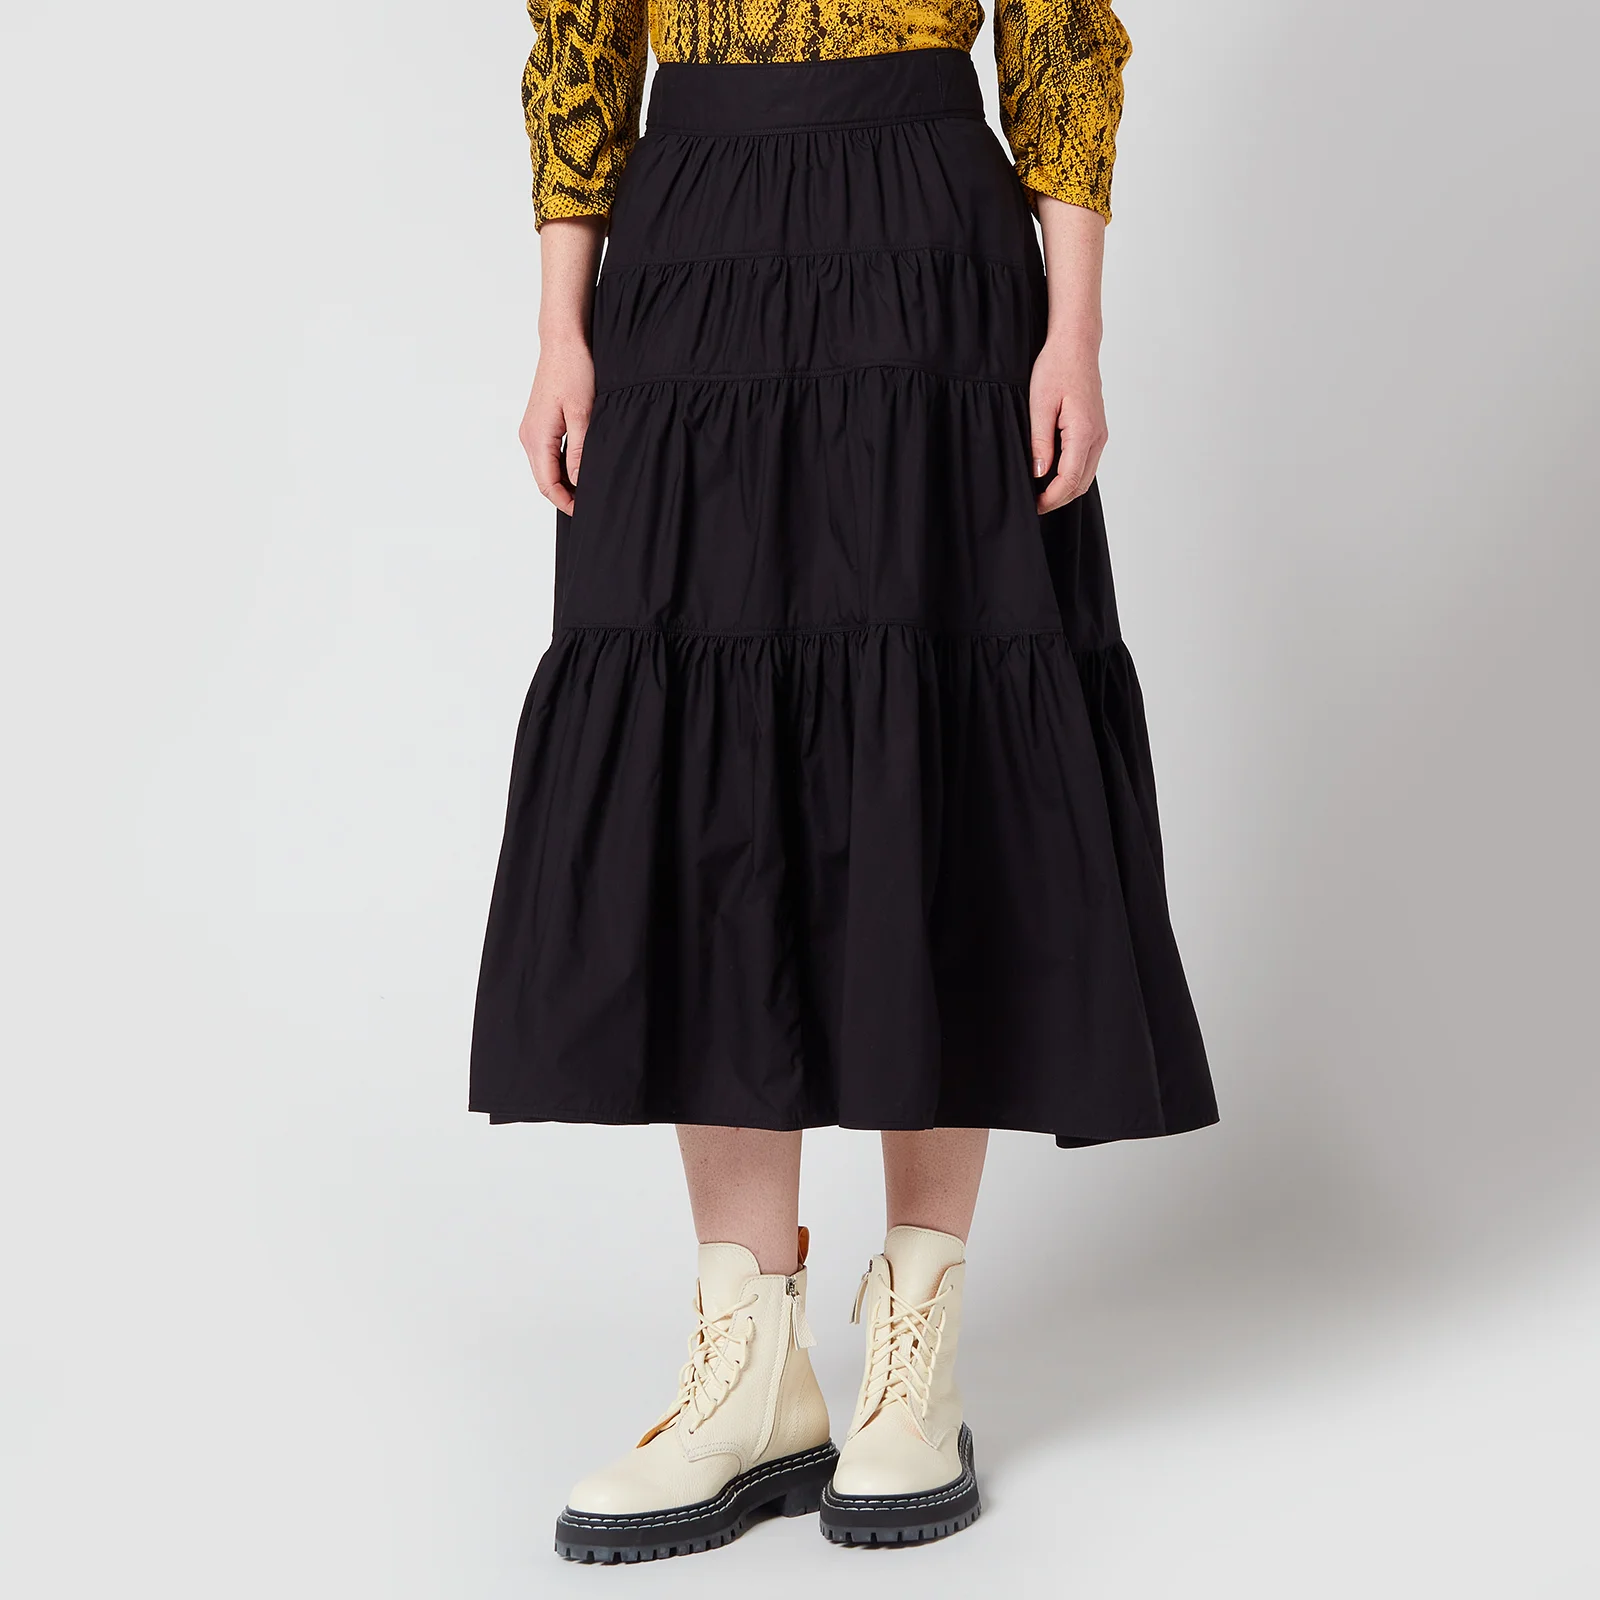 Proenza Schouler Women's Poplin Tiered Skirt - Black Image 1